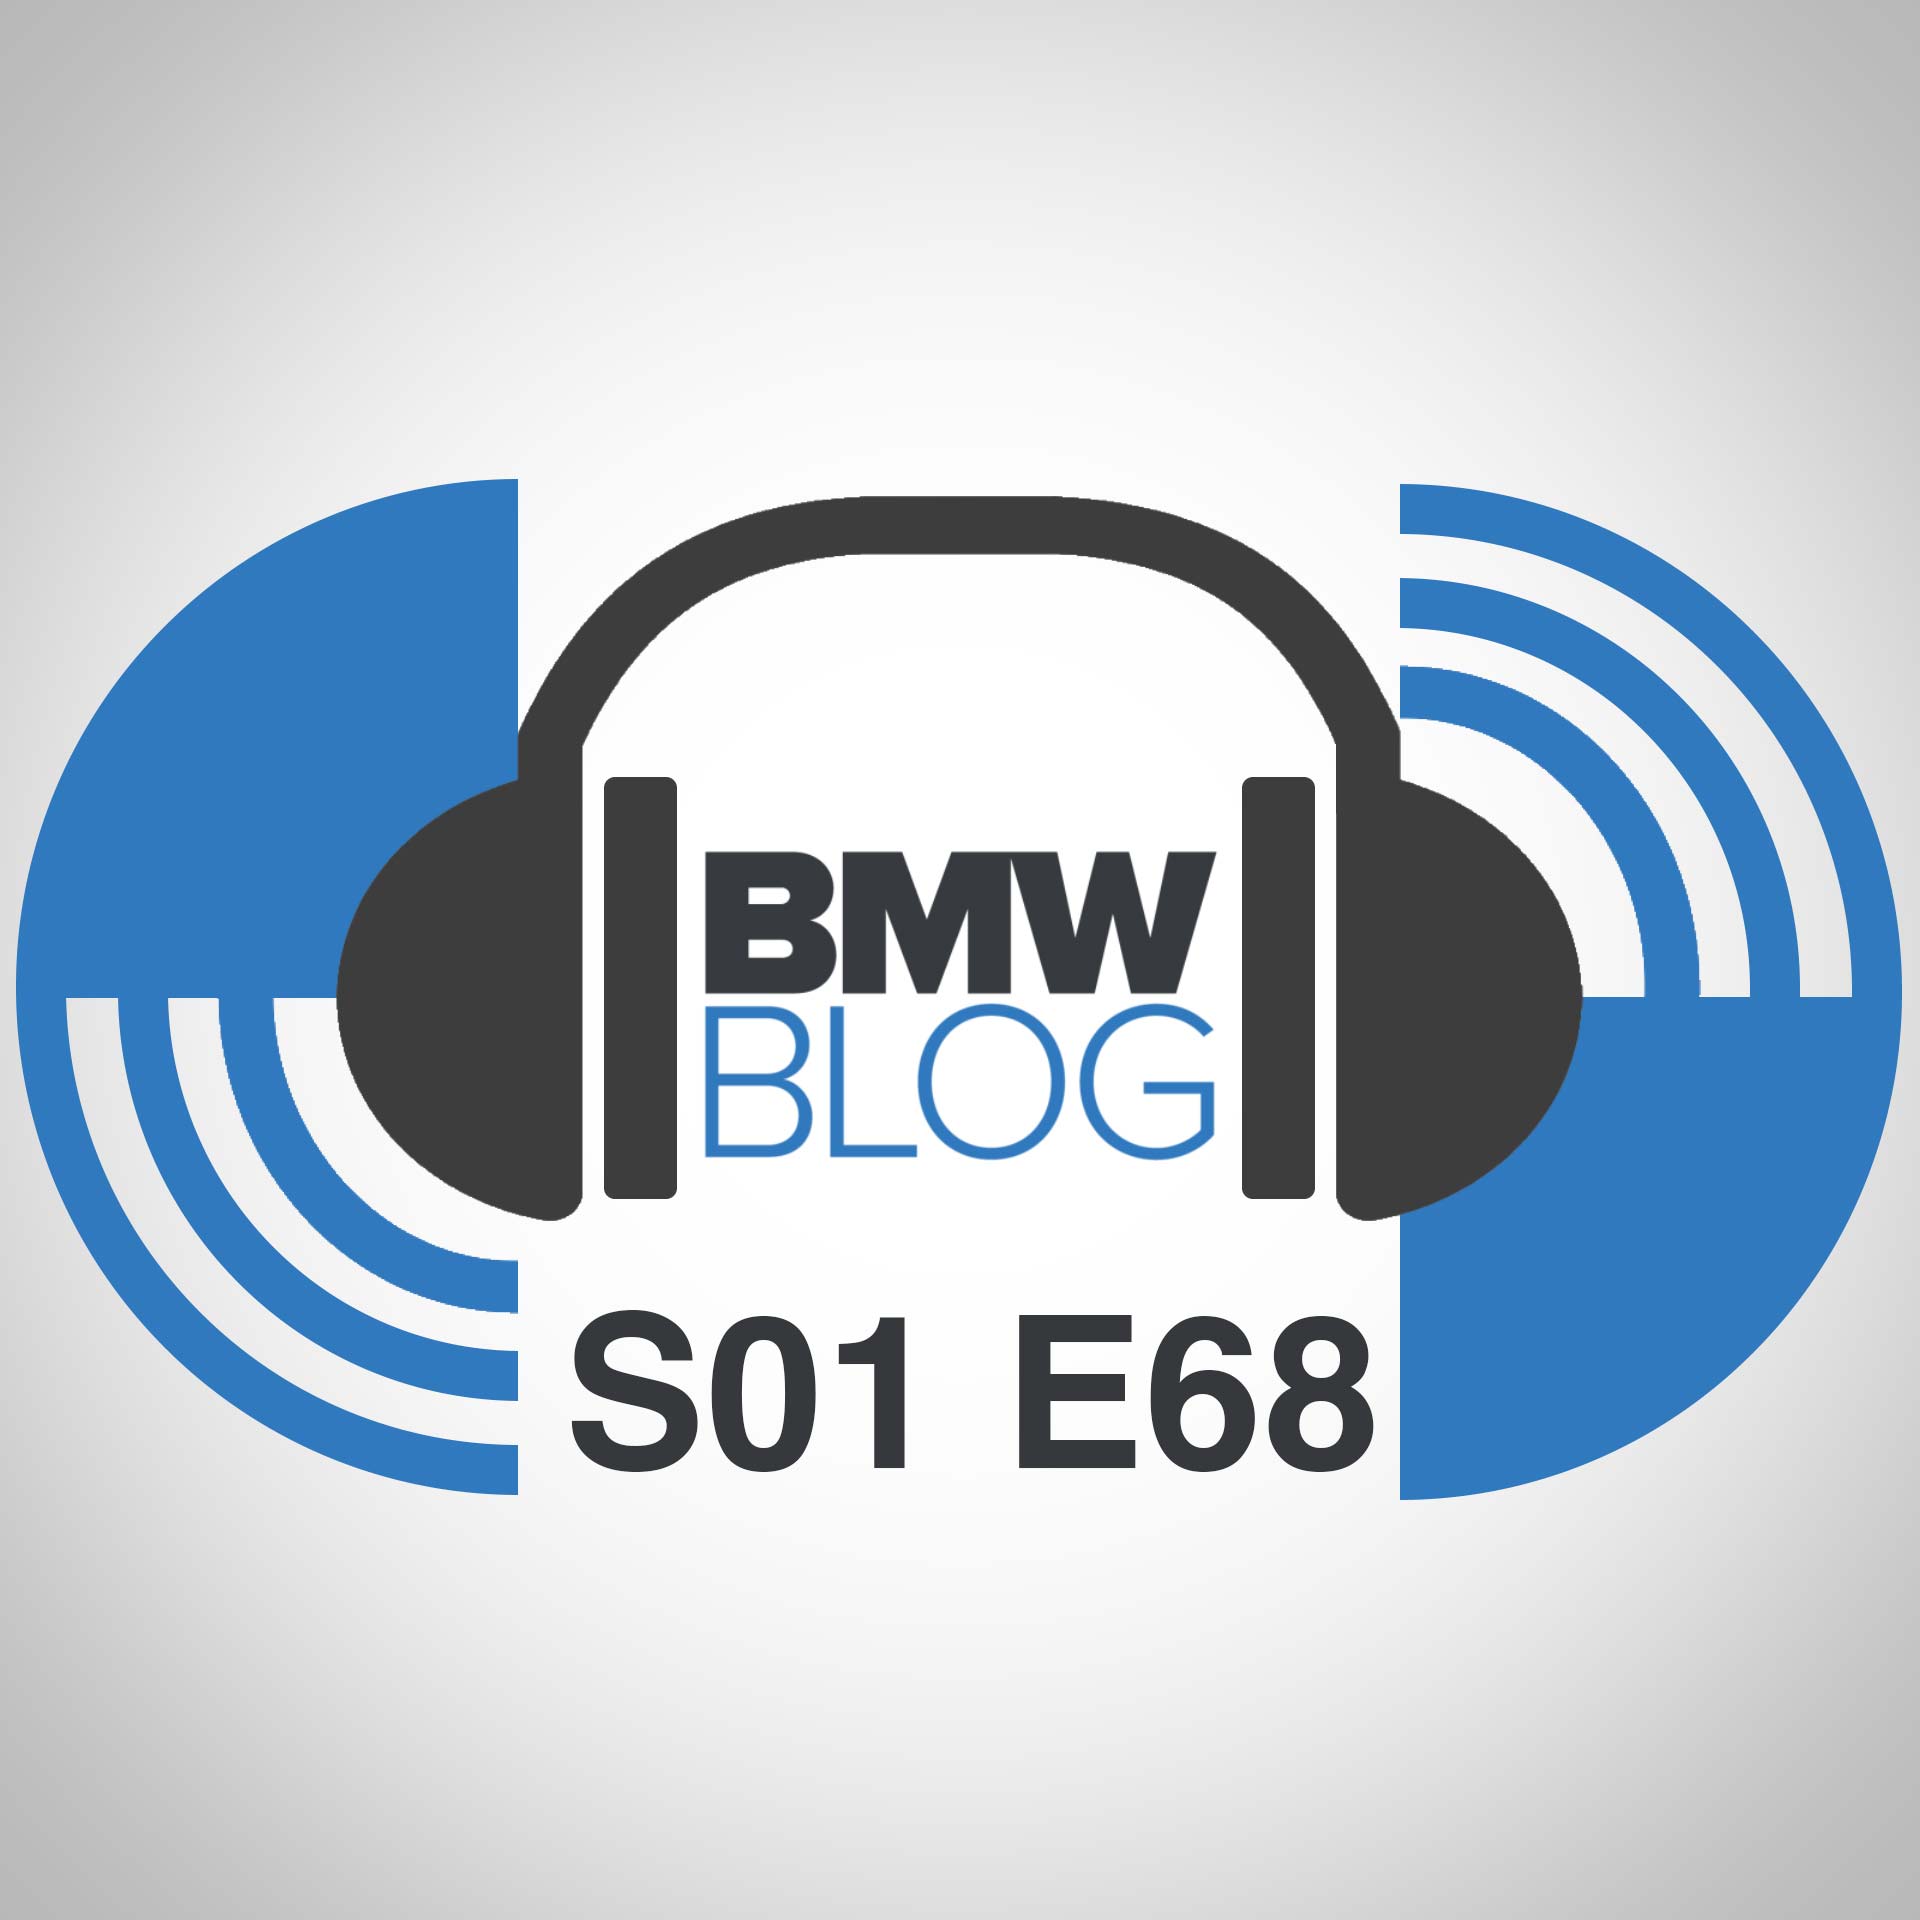 bmwblog podcast episode 68